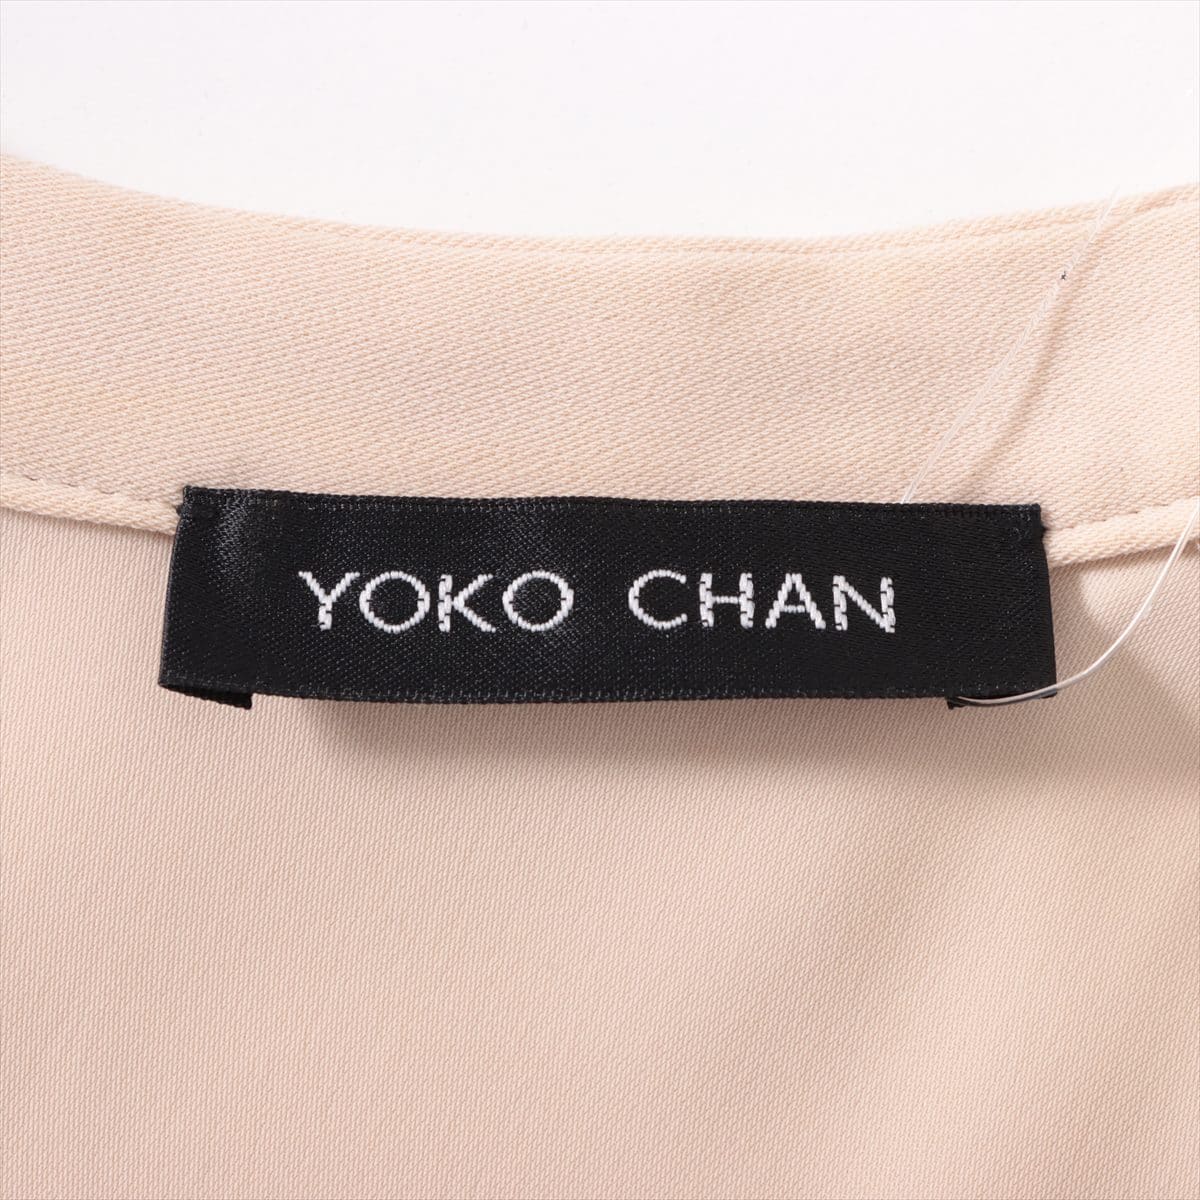 YOKO CHAN Polyester Jumpsuit 38 Ladies' black x beige  YCP-117-034